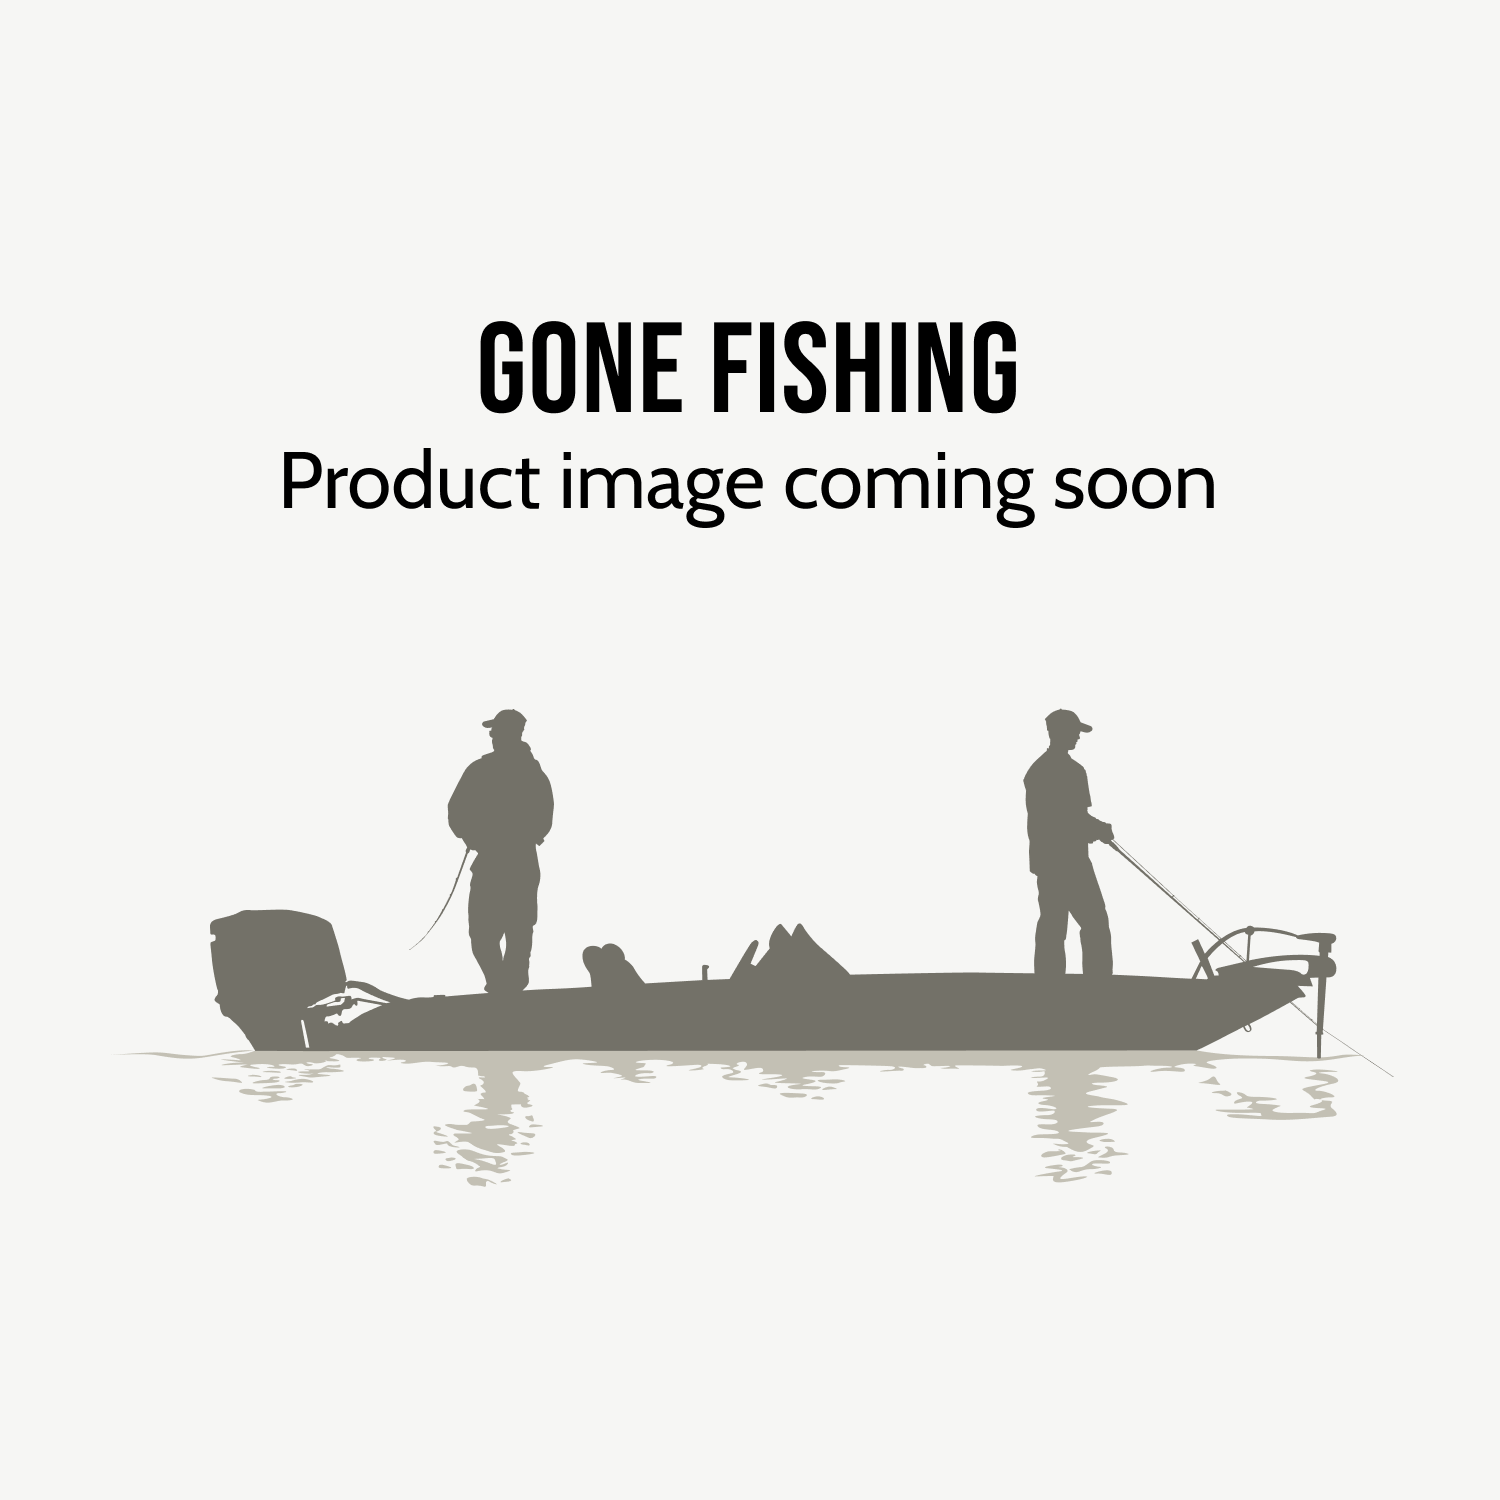 Fishing Gear - Fishing Supplies & Equipment